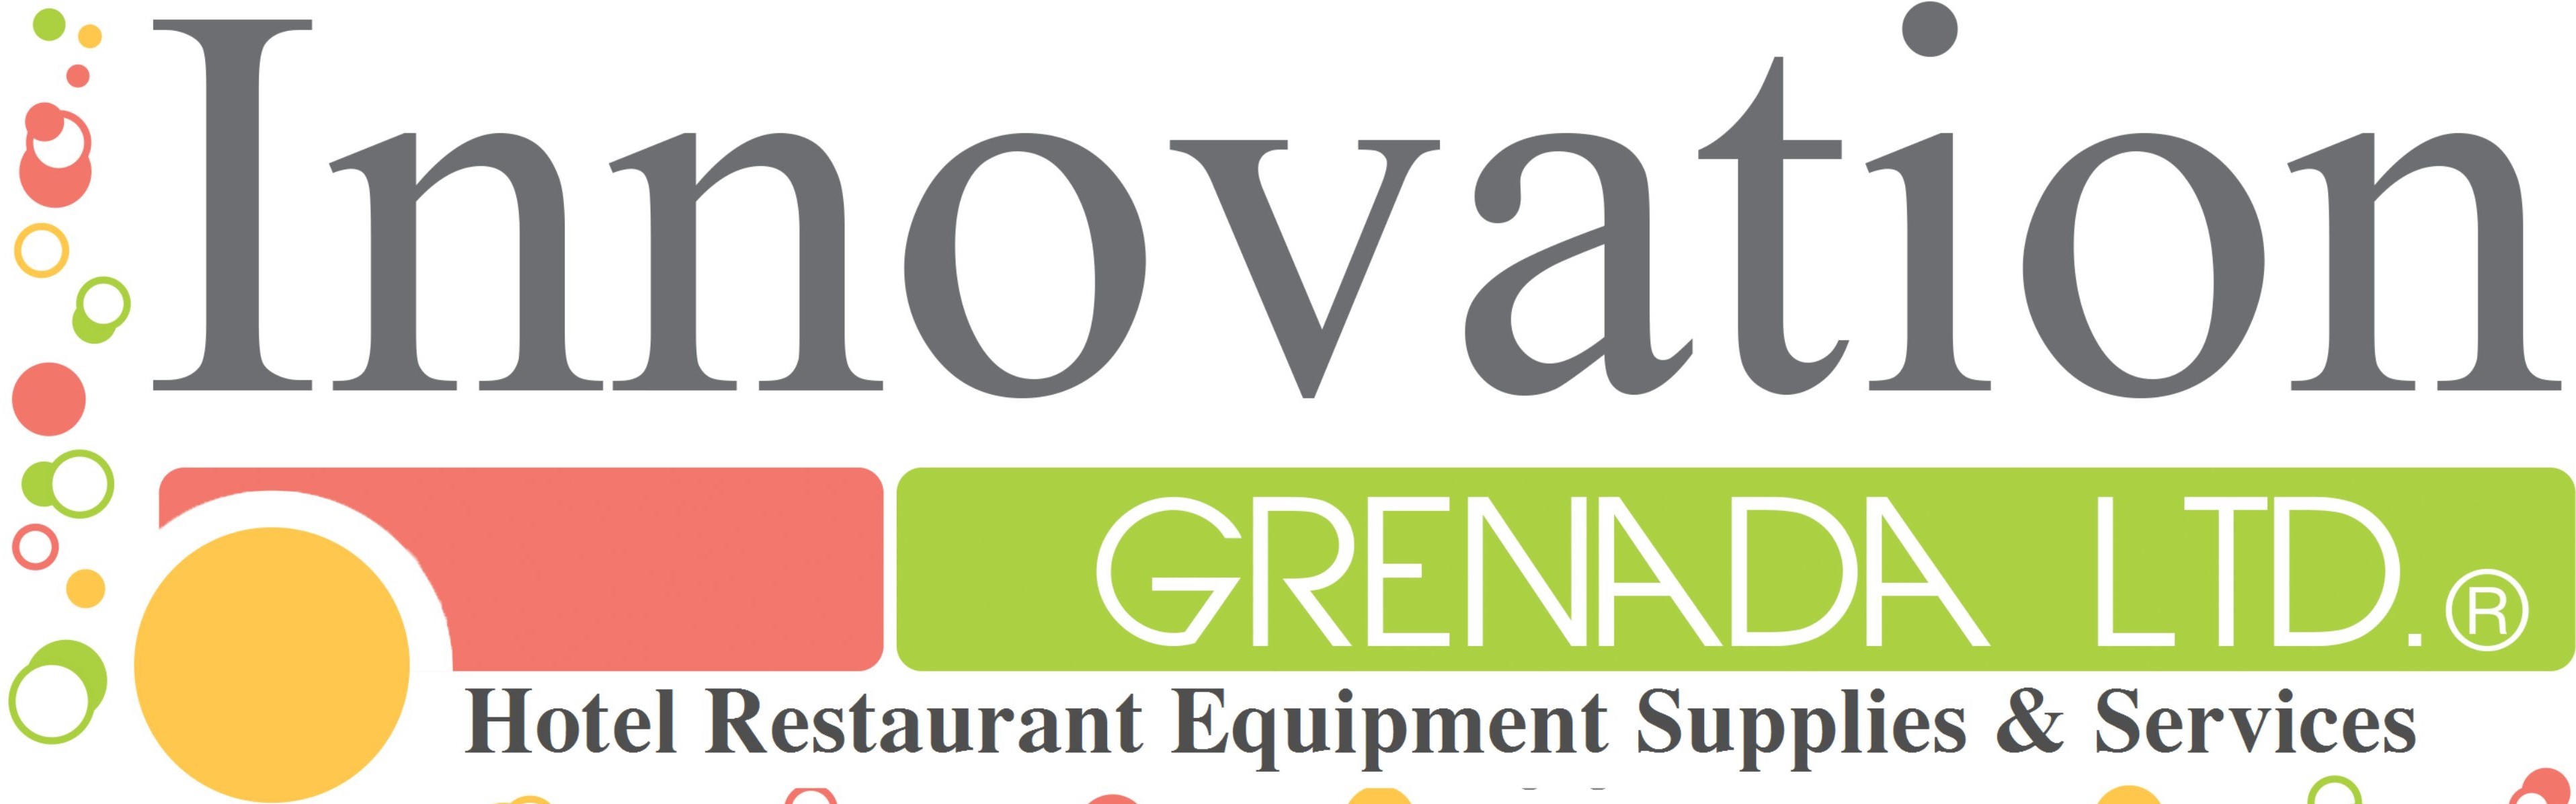 Innovation Grenada Ltd